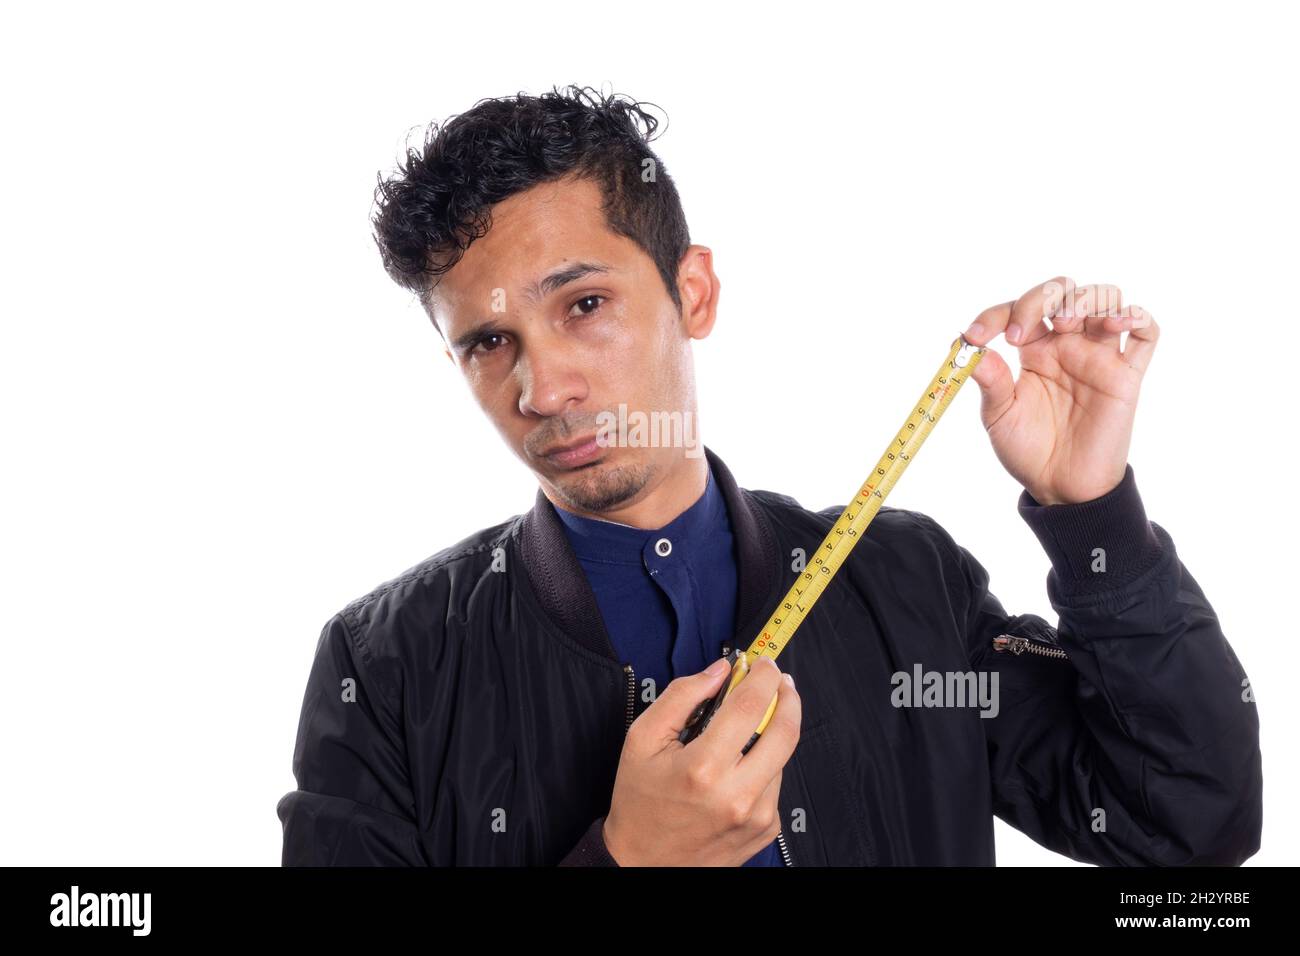 Mann mit Maßband, weißer Hintergrund. Junger Latino-Mann, der zeigt, wie man ein Maßband verwendet. Stockfoto